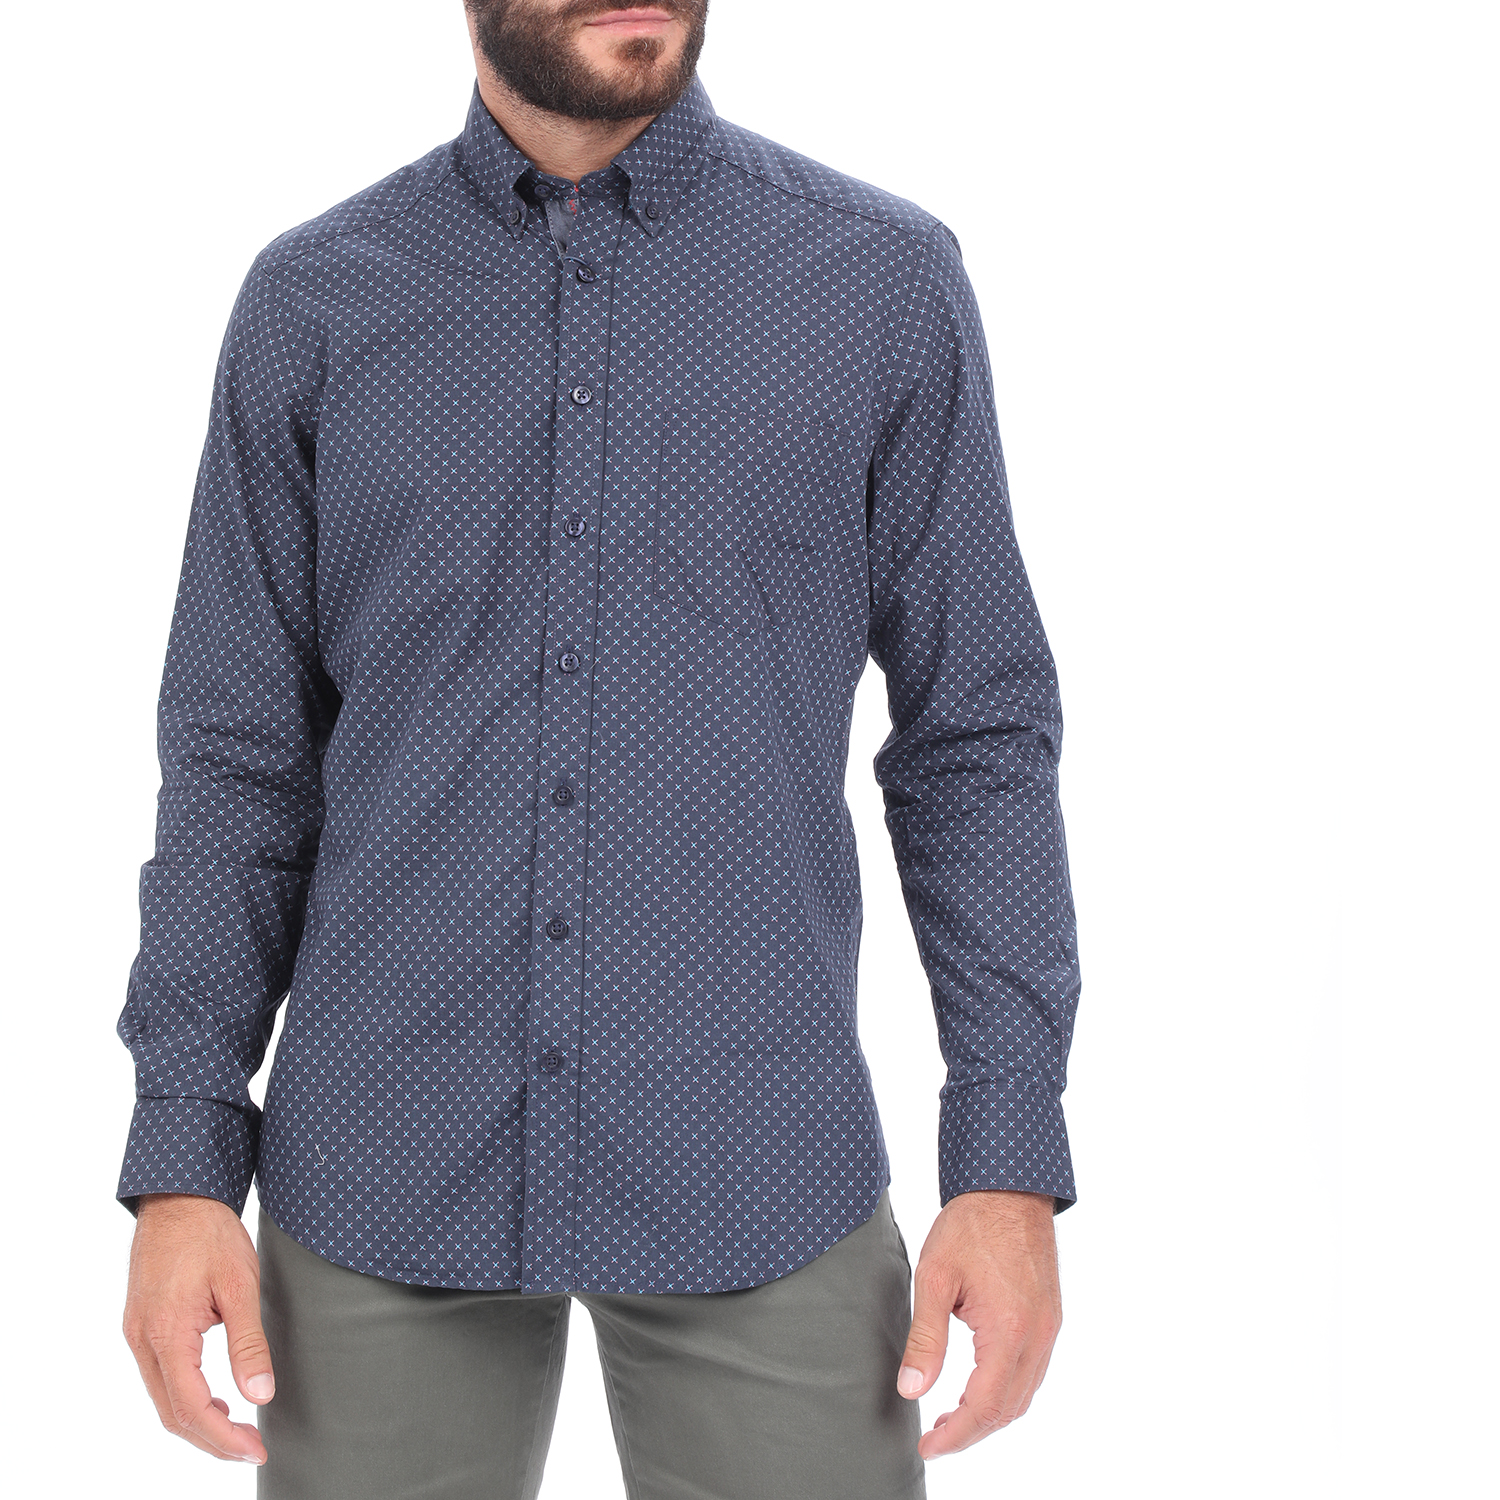 Ανδρικά/Ρούχα/Πουκάμισα/Μακρυμάνικα HAMPTONS - Ανδρικό πουκάμισο HAMPTONS MICRODESIGN μπλε